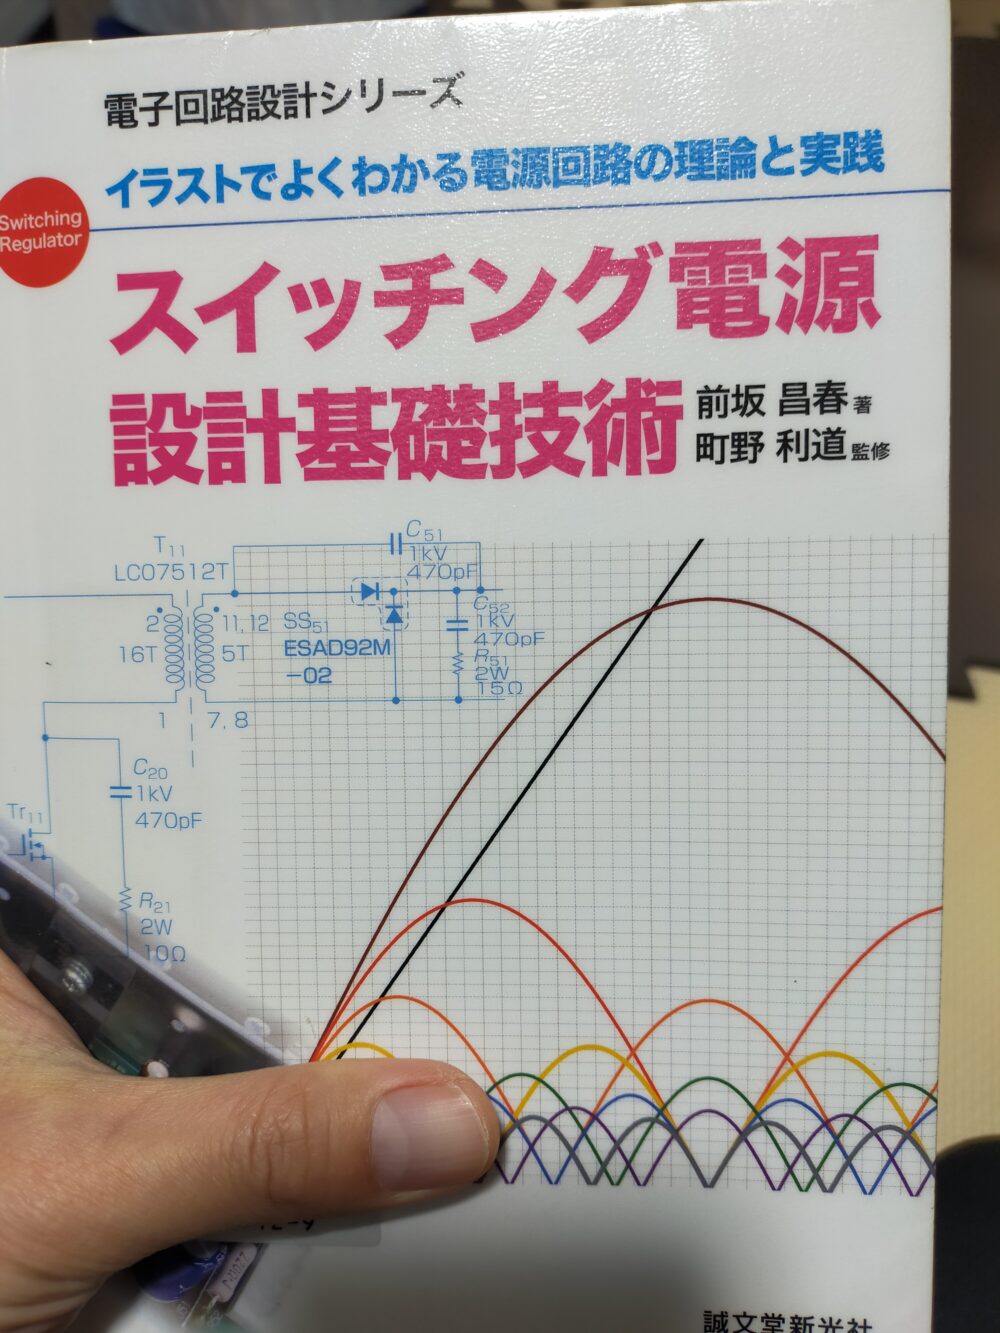 フーリエ級数(展開)・N次高調波とは何かが簡潔に説明してある書籍４